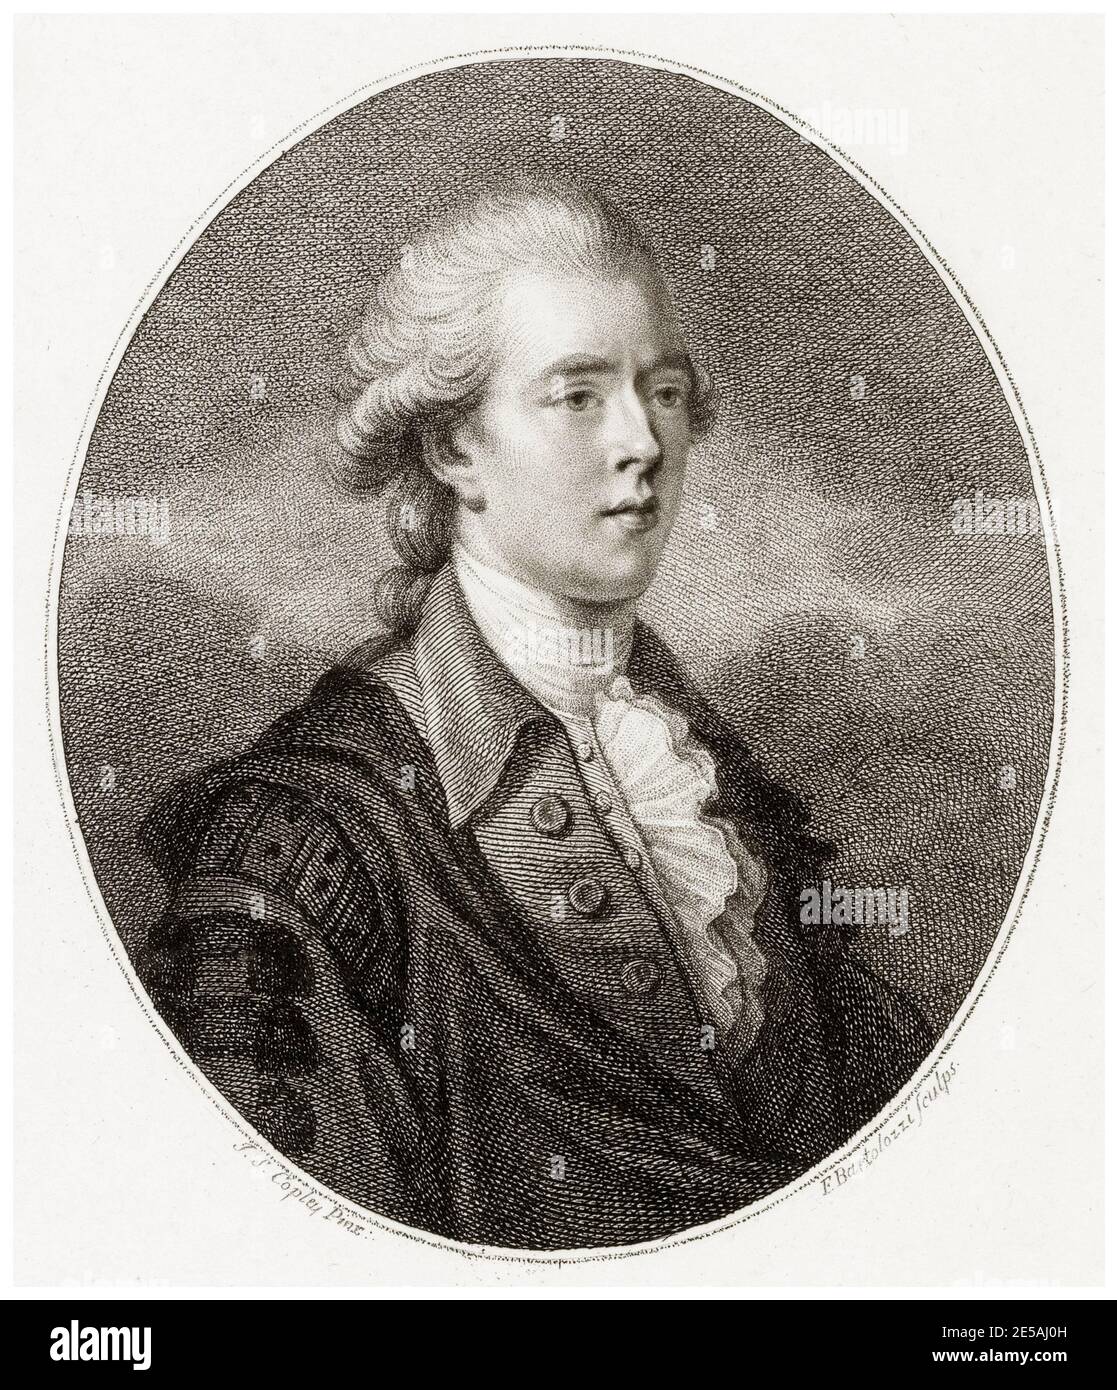 William Pitt le jeune (1759-1806), premier ministre britannique 1783-1801 et 1804-1806, portrait gravé par Francesco Bartolozzi d'après John Singleton Copley, 1789 Banque D'Images